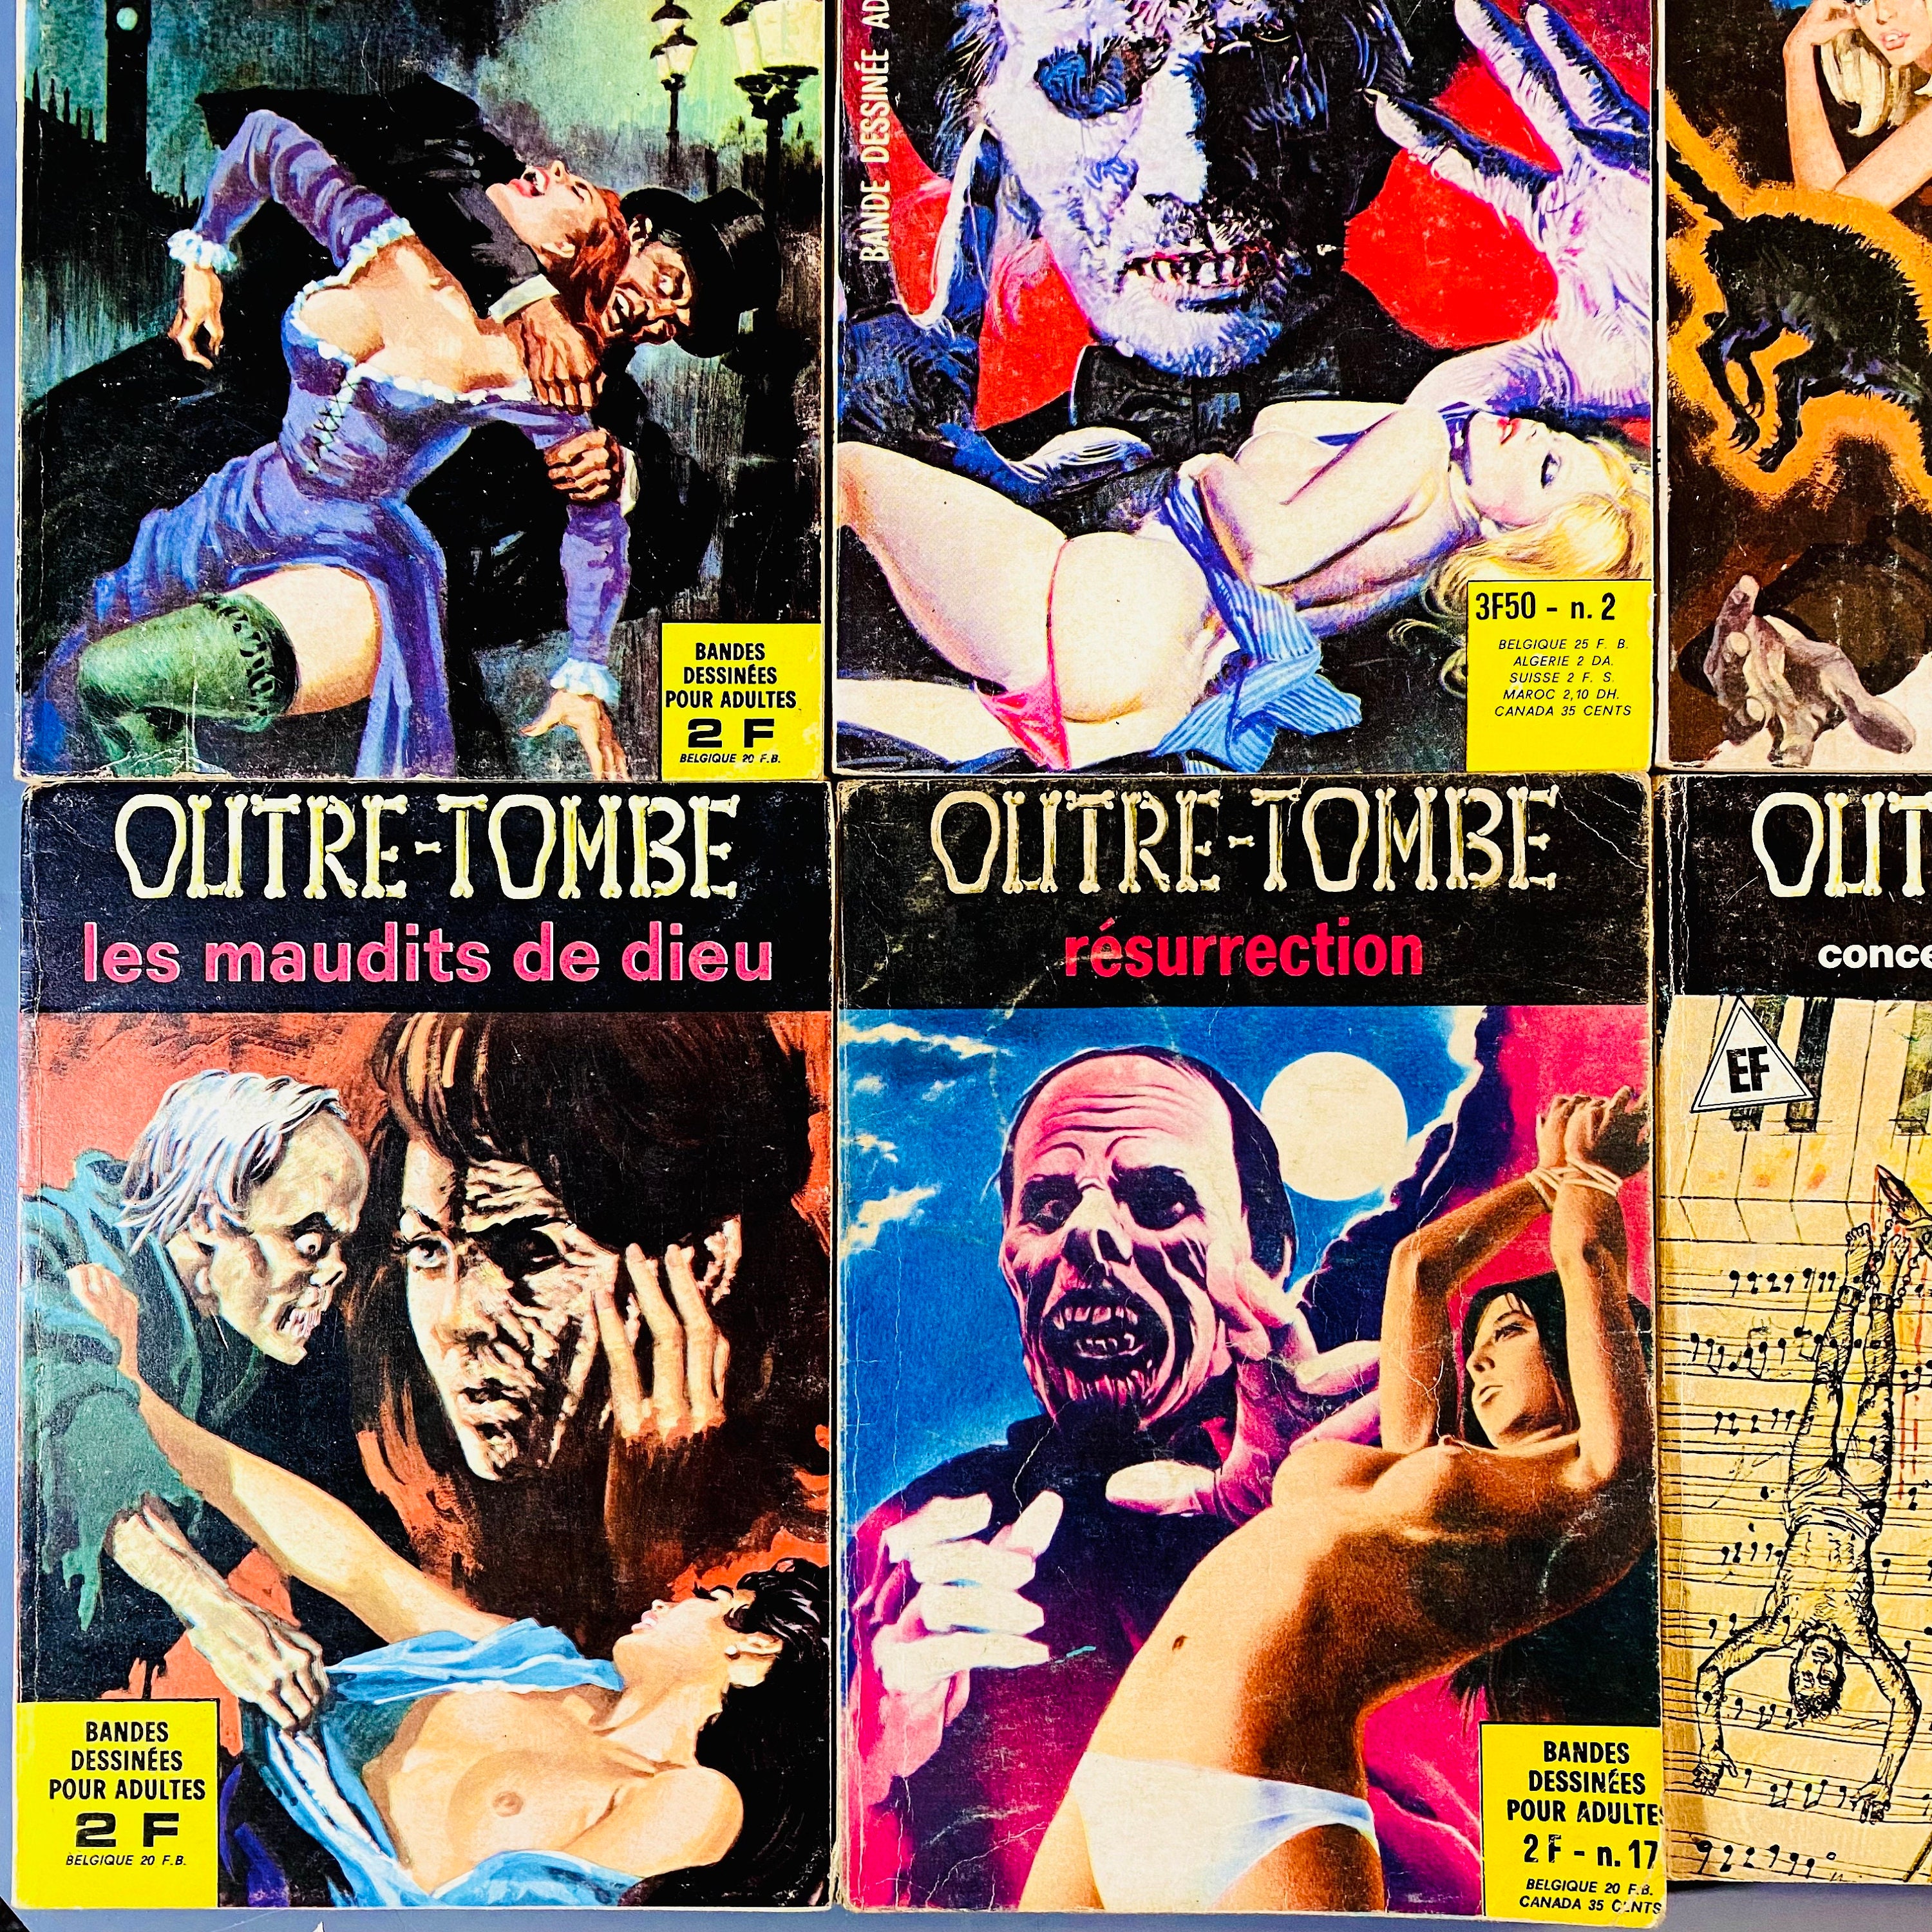 ELVIFRANCE Bande Dessinée Adulte Vintage France / Bd Horreur retro Vintage  French Comics Erotic Horror Erotique Epouvante